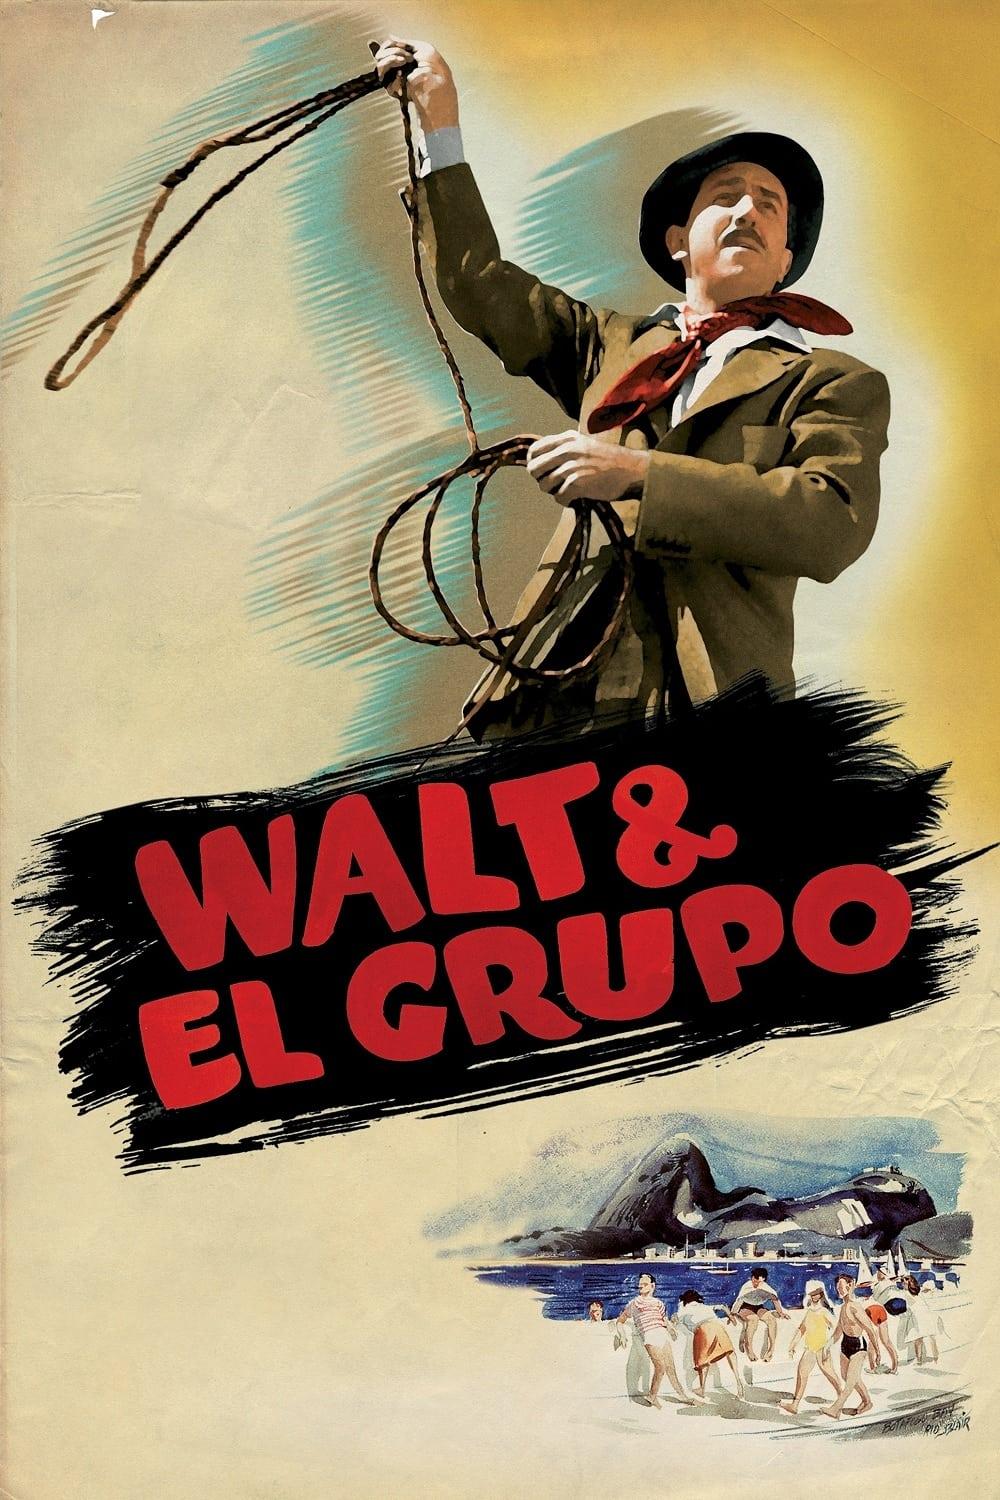 Walt & El Grupo poster